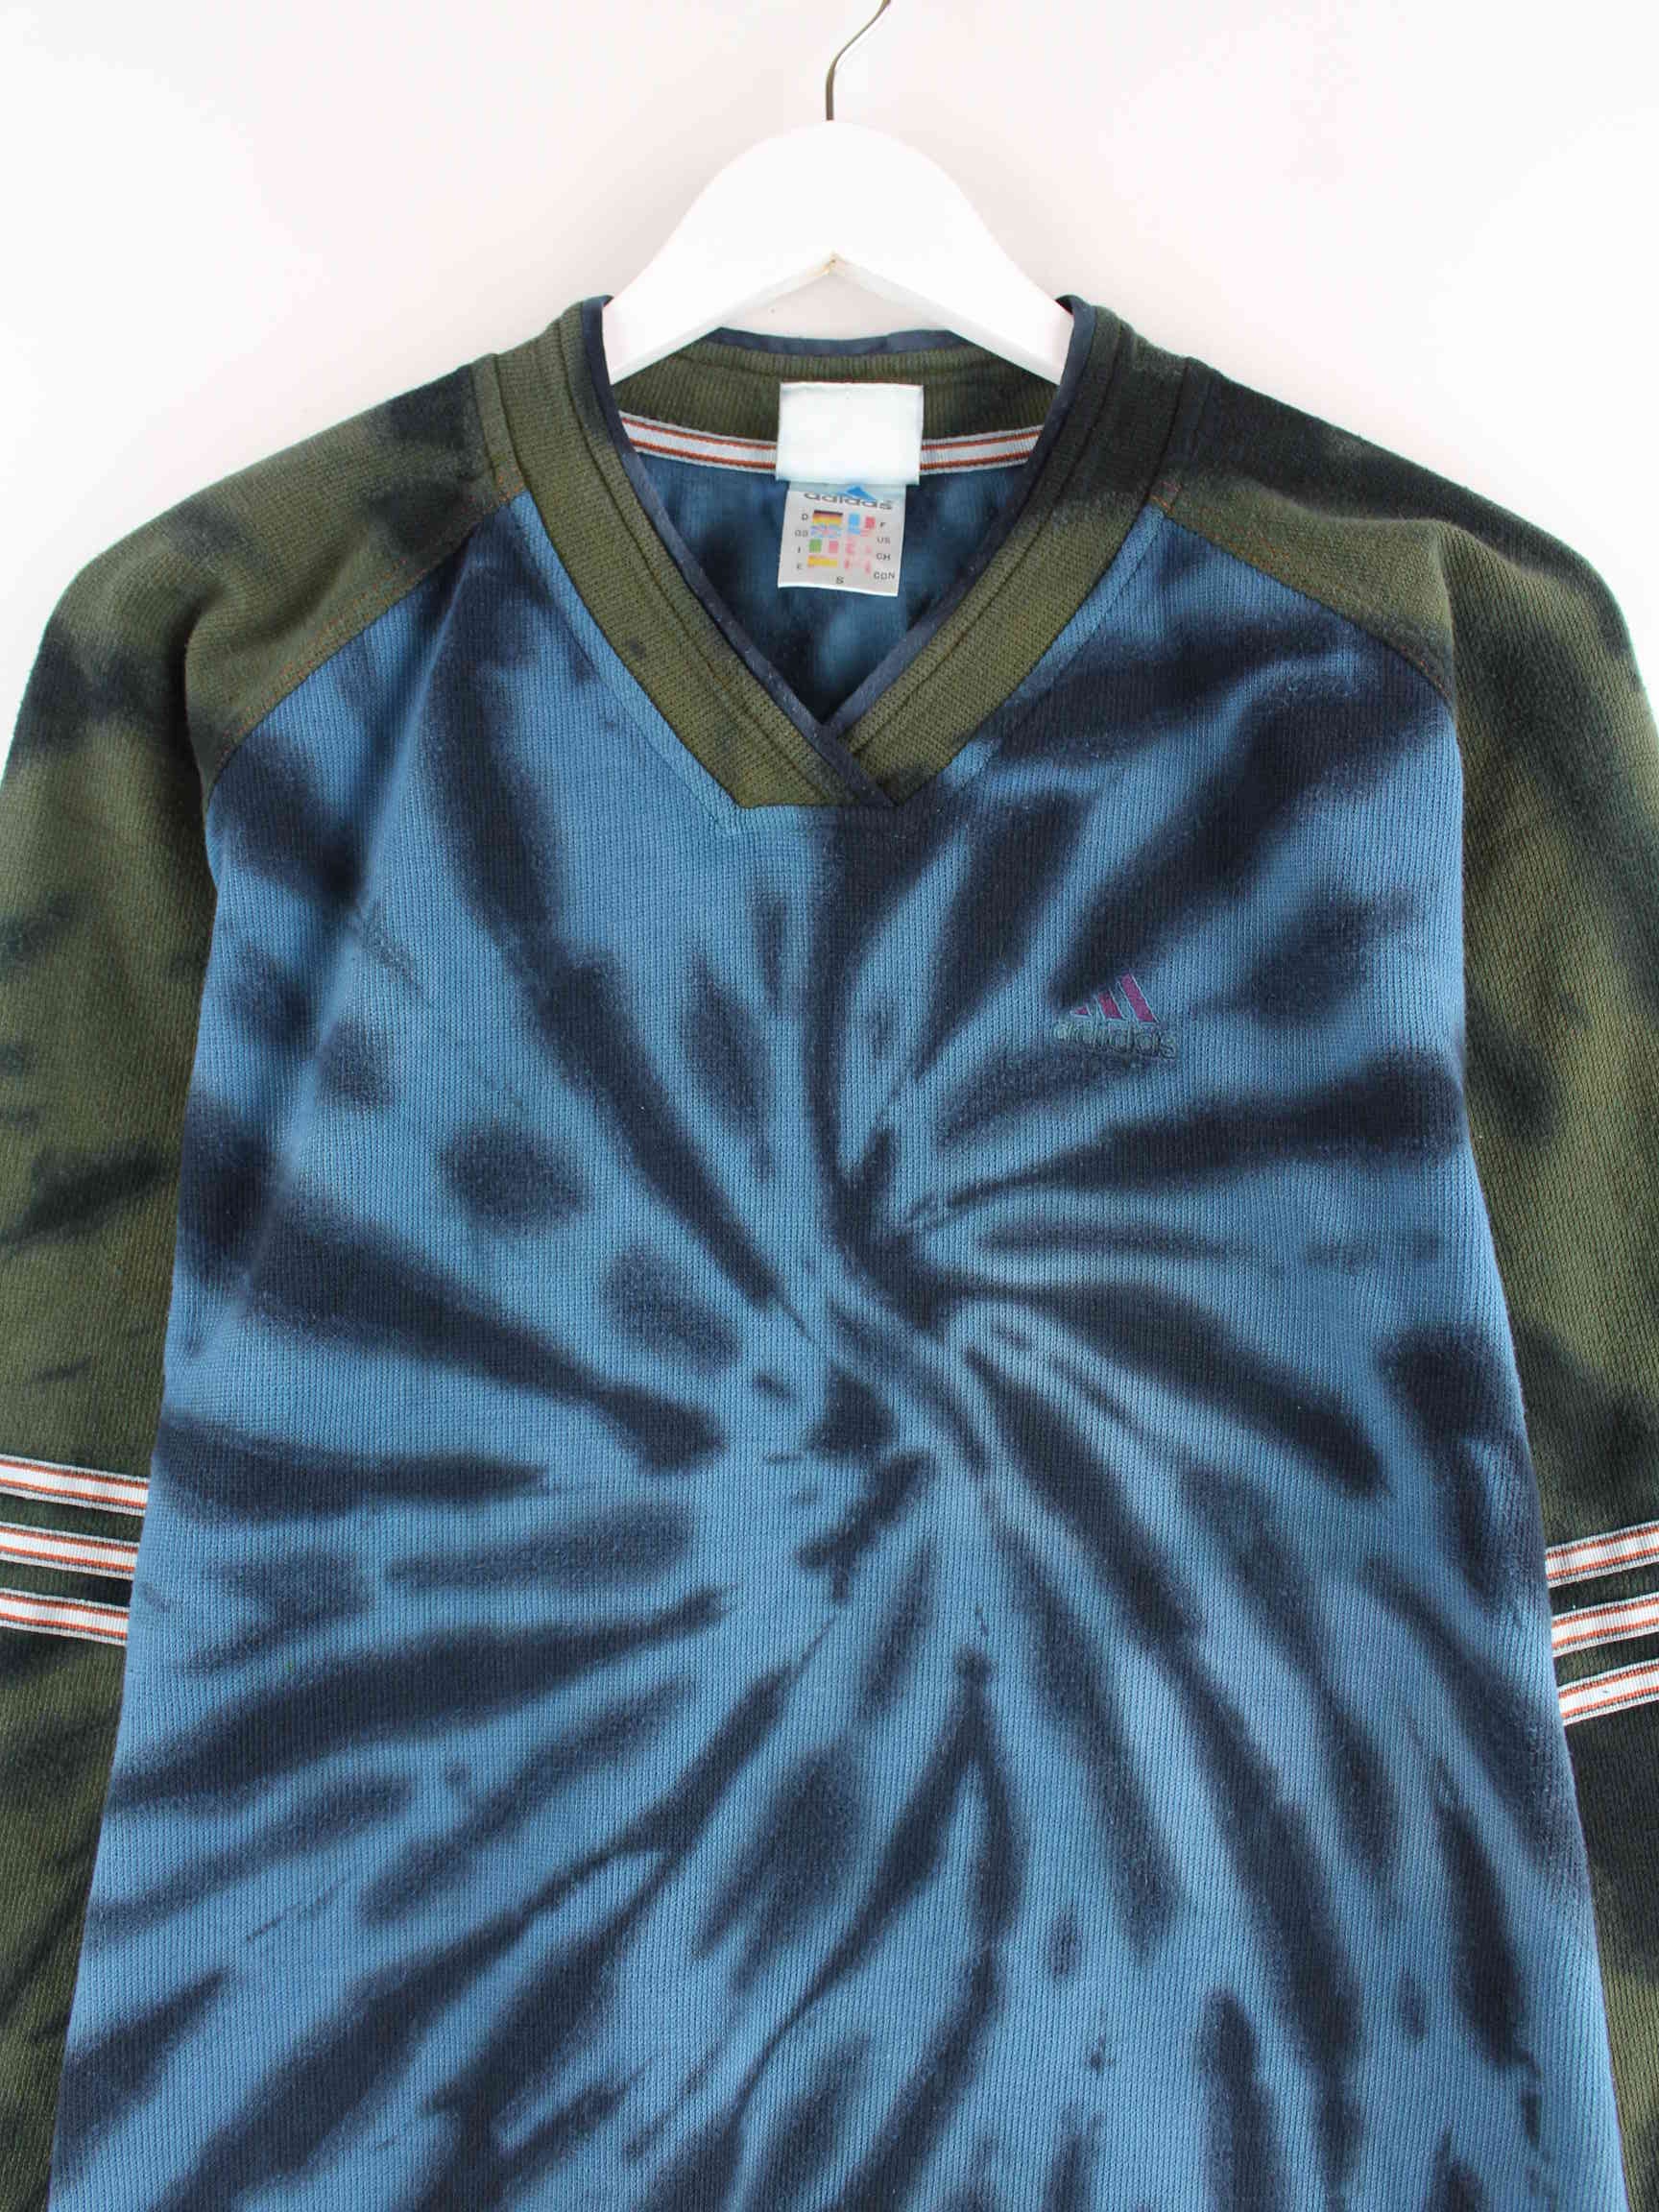 Adidas 90s Vintage Tie Die Sweater Blau S (detail image 1)